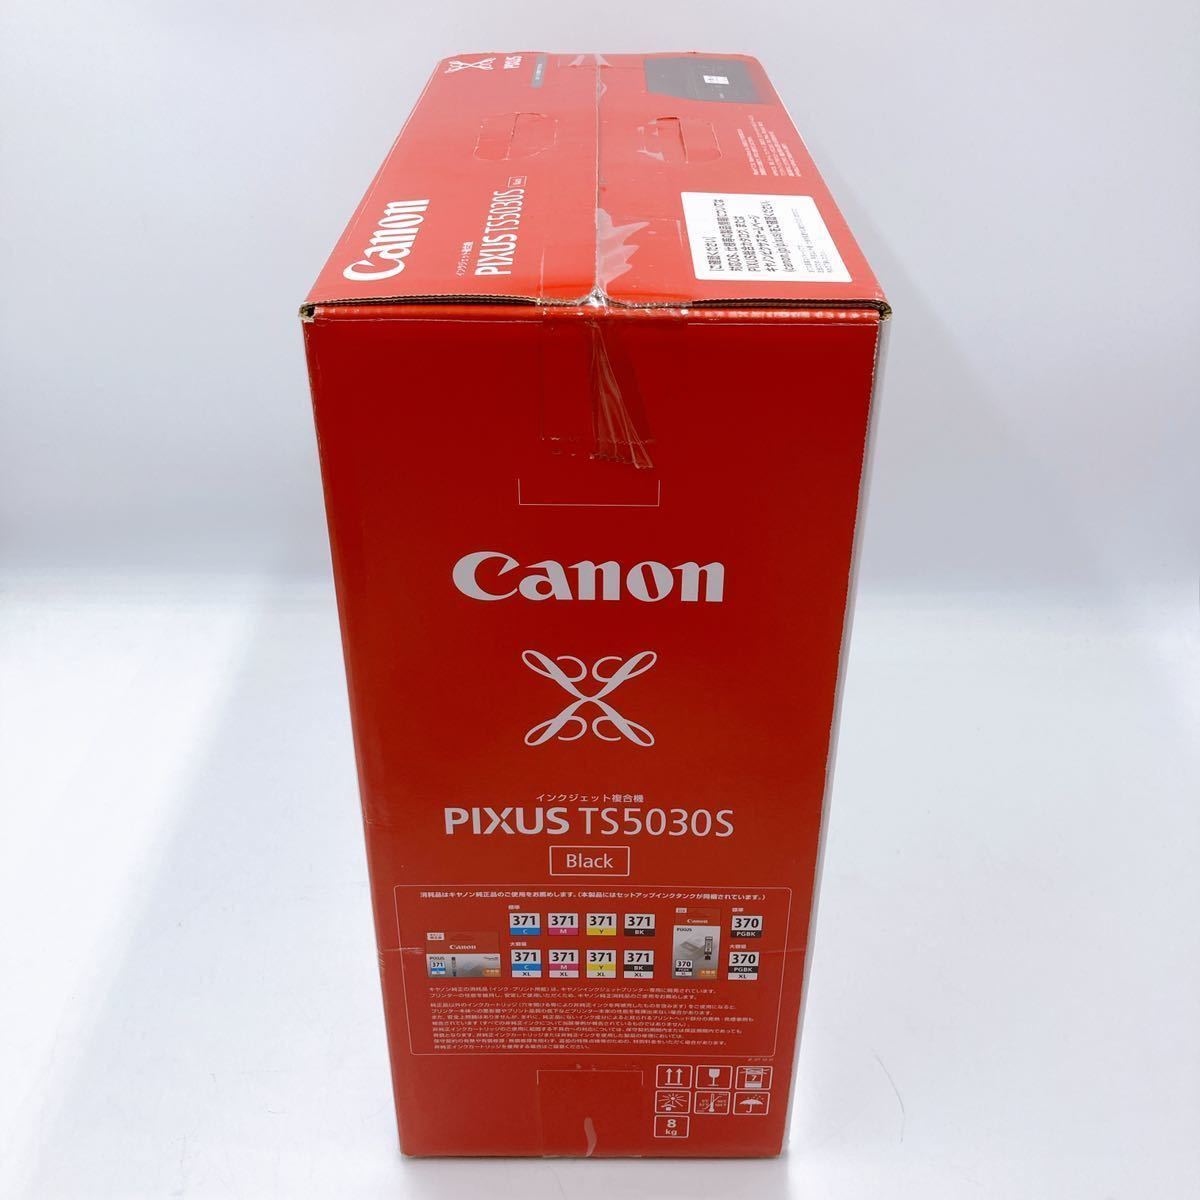 6f17600 未使用品 黒 TS5030S Canon プリンター インクジェット複合機 A4 対応 PIXUS Black キャノン 旧モデル 